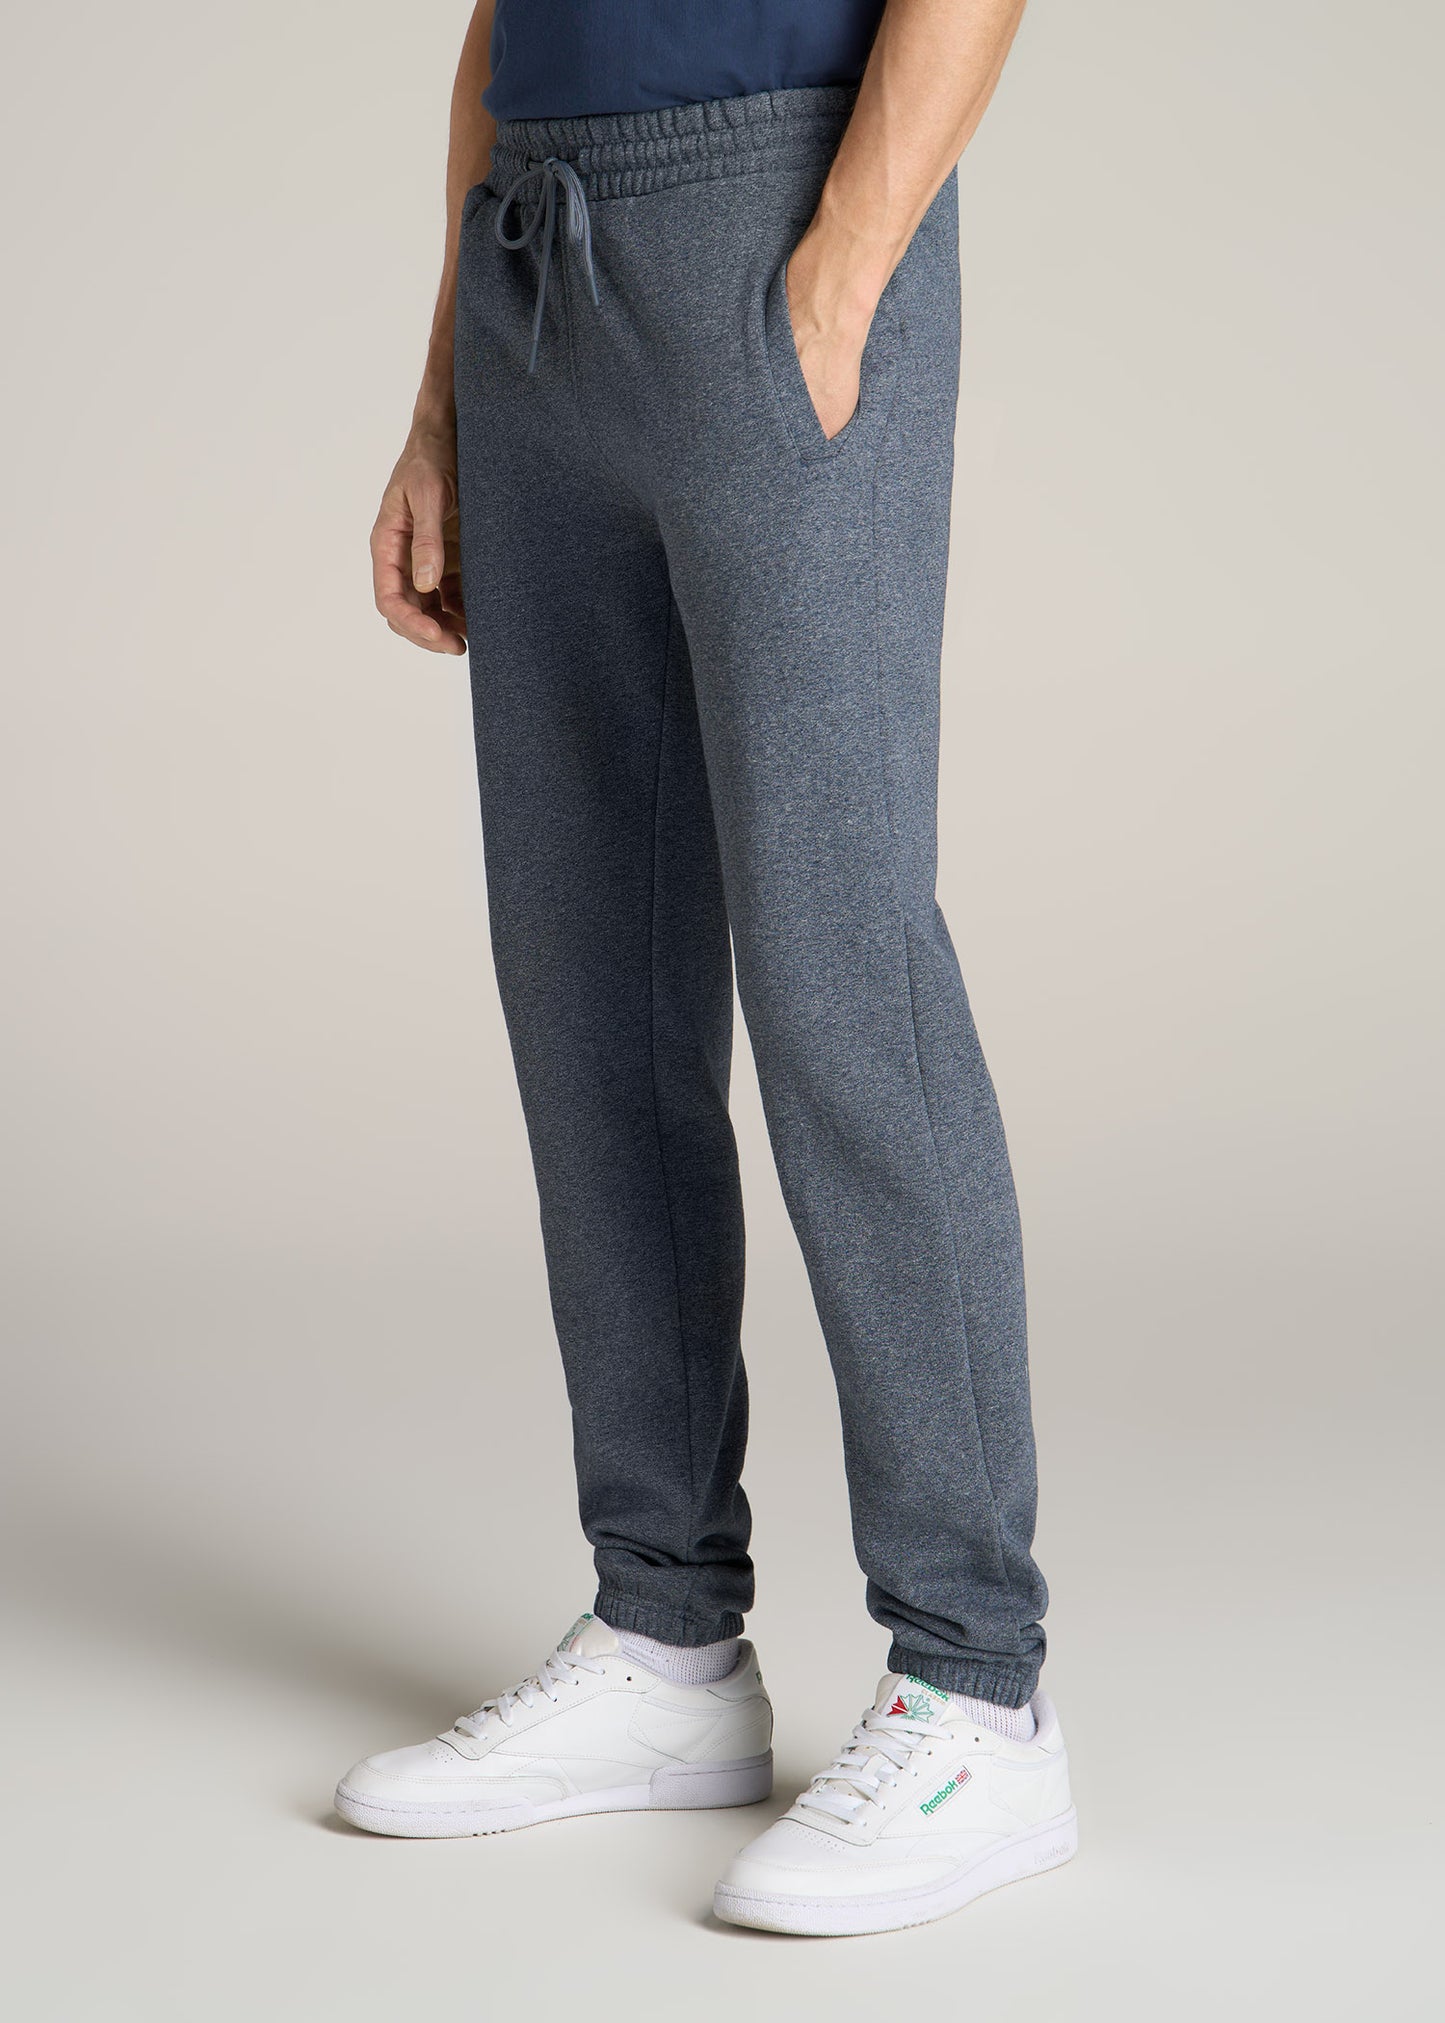 Wearever Fleece Elastic-Bottom Tall Men's Sweatpants